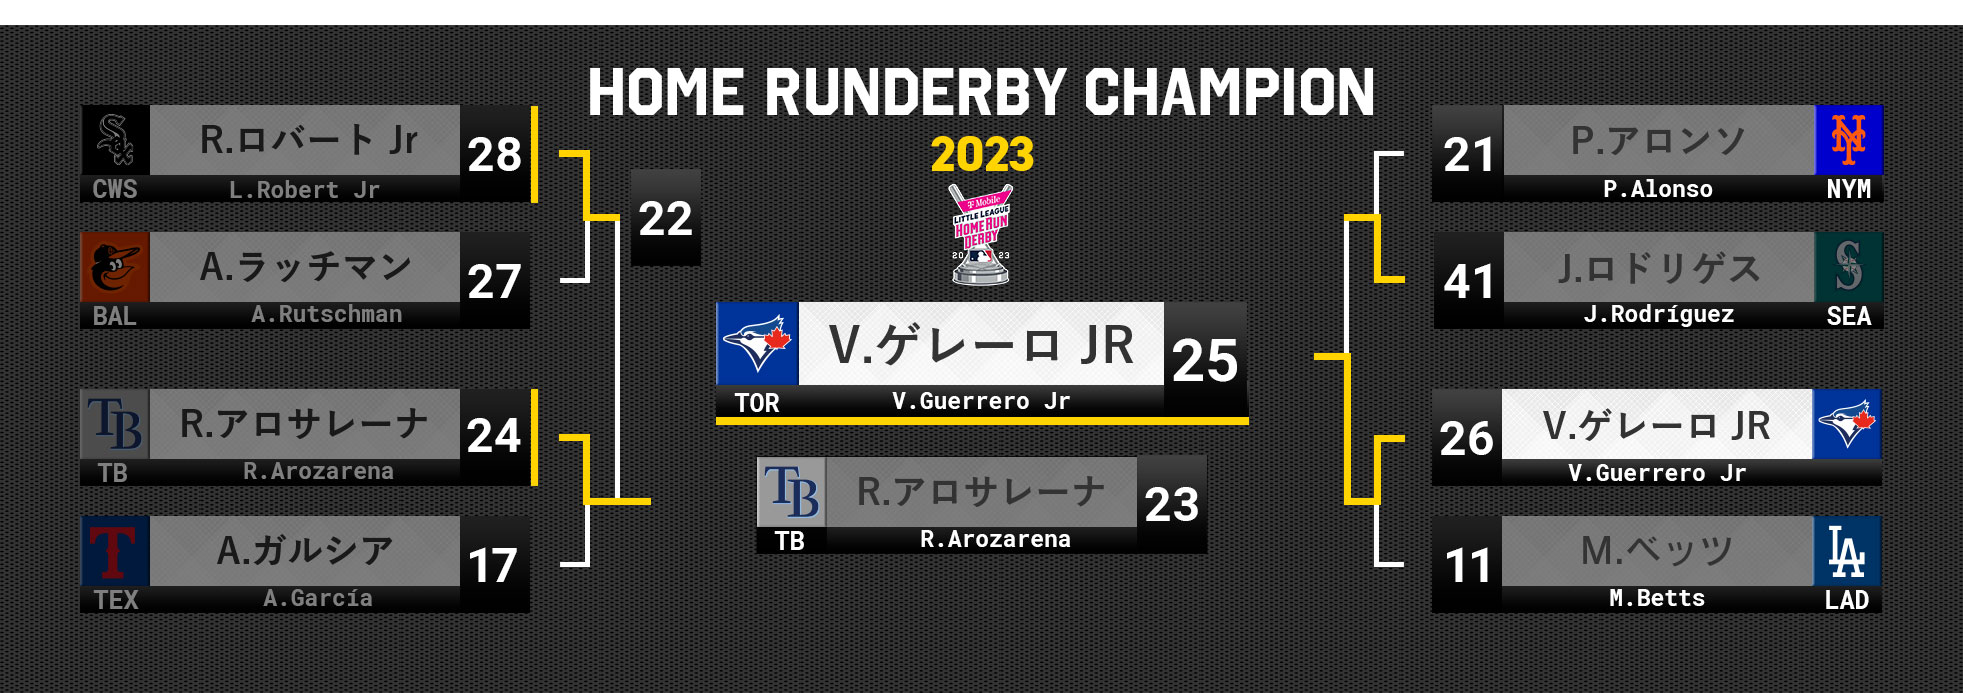 MLB ホームランダービー 2023 トーナメント